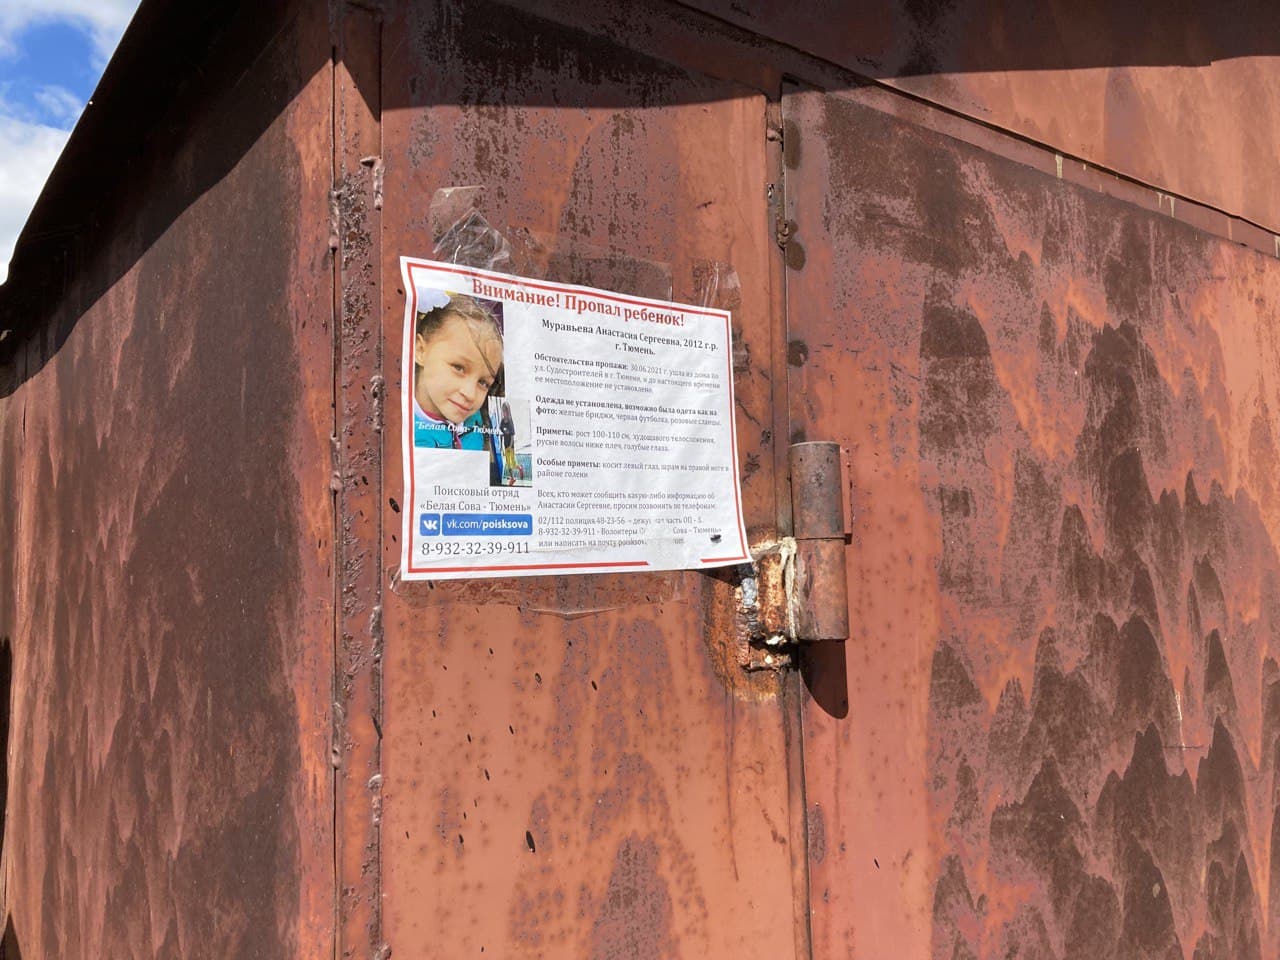 Листовка с ориентировкой на Анастасию Муравьёву в СНТ, где живет Поль Григье Де Женотье